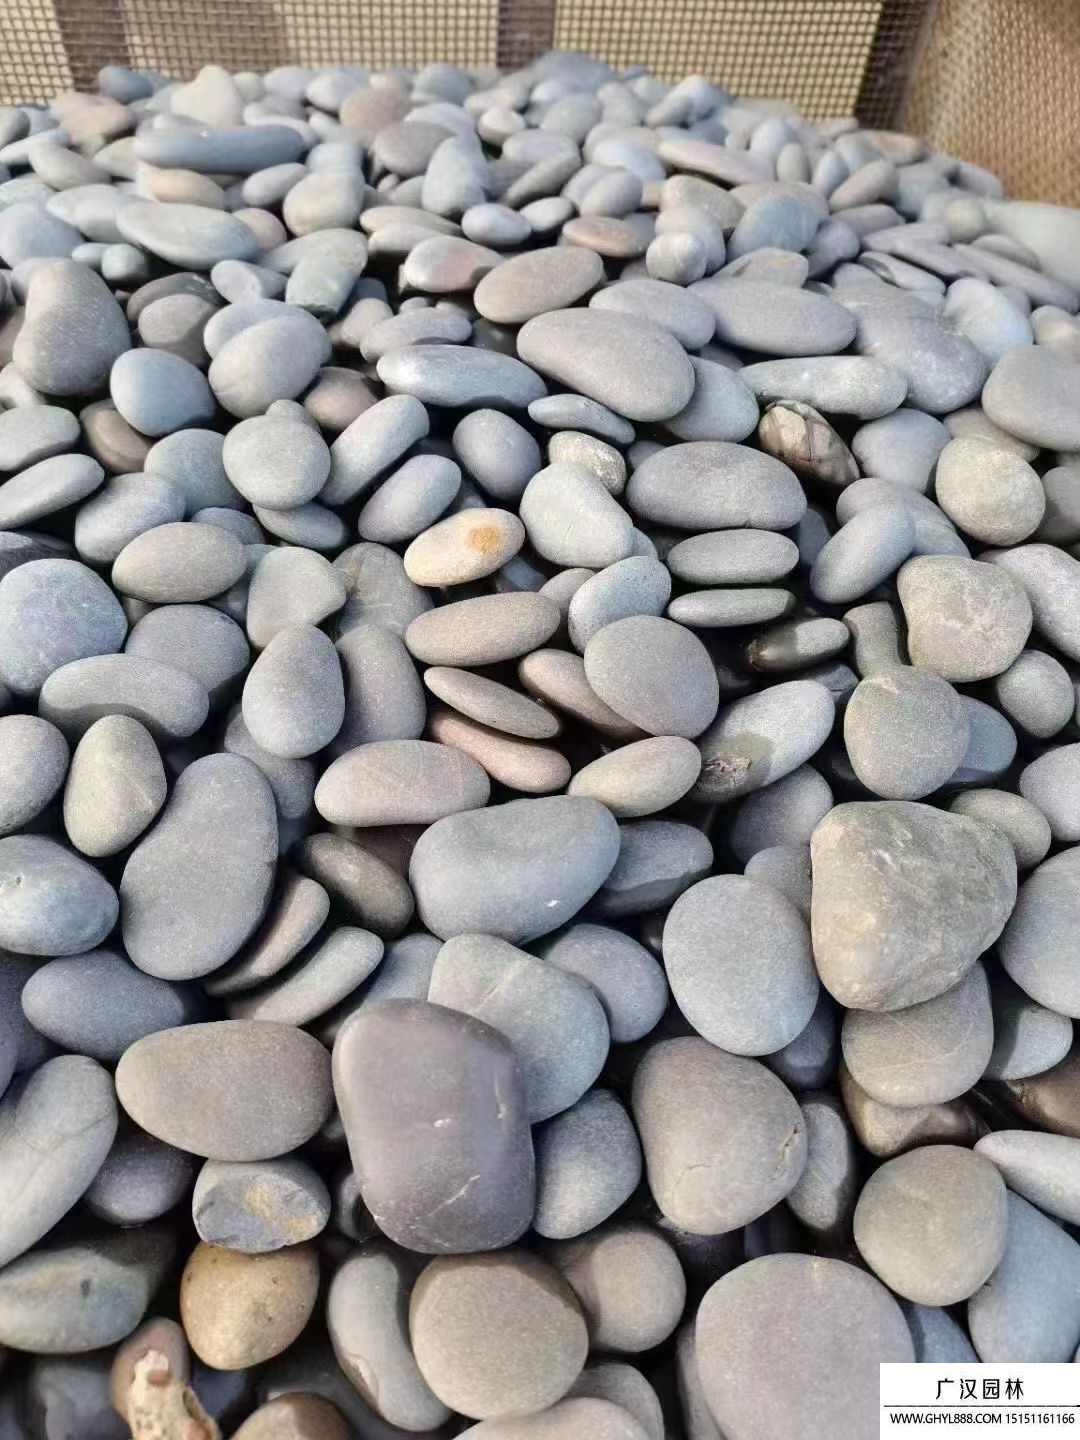 鹅卵石是什么岩石类型